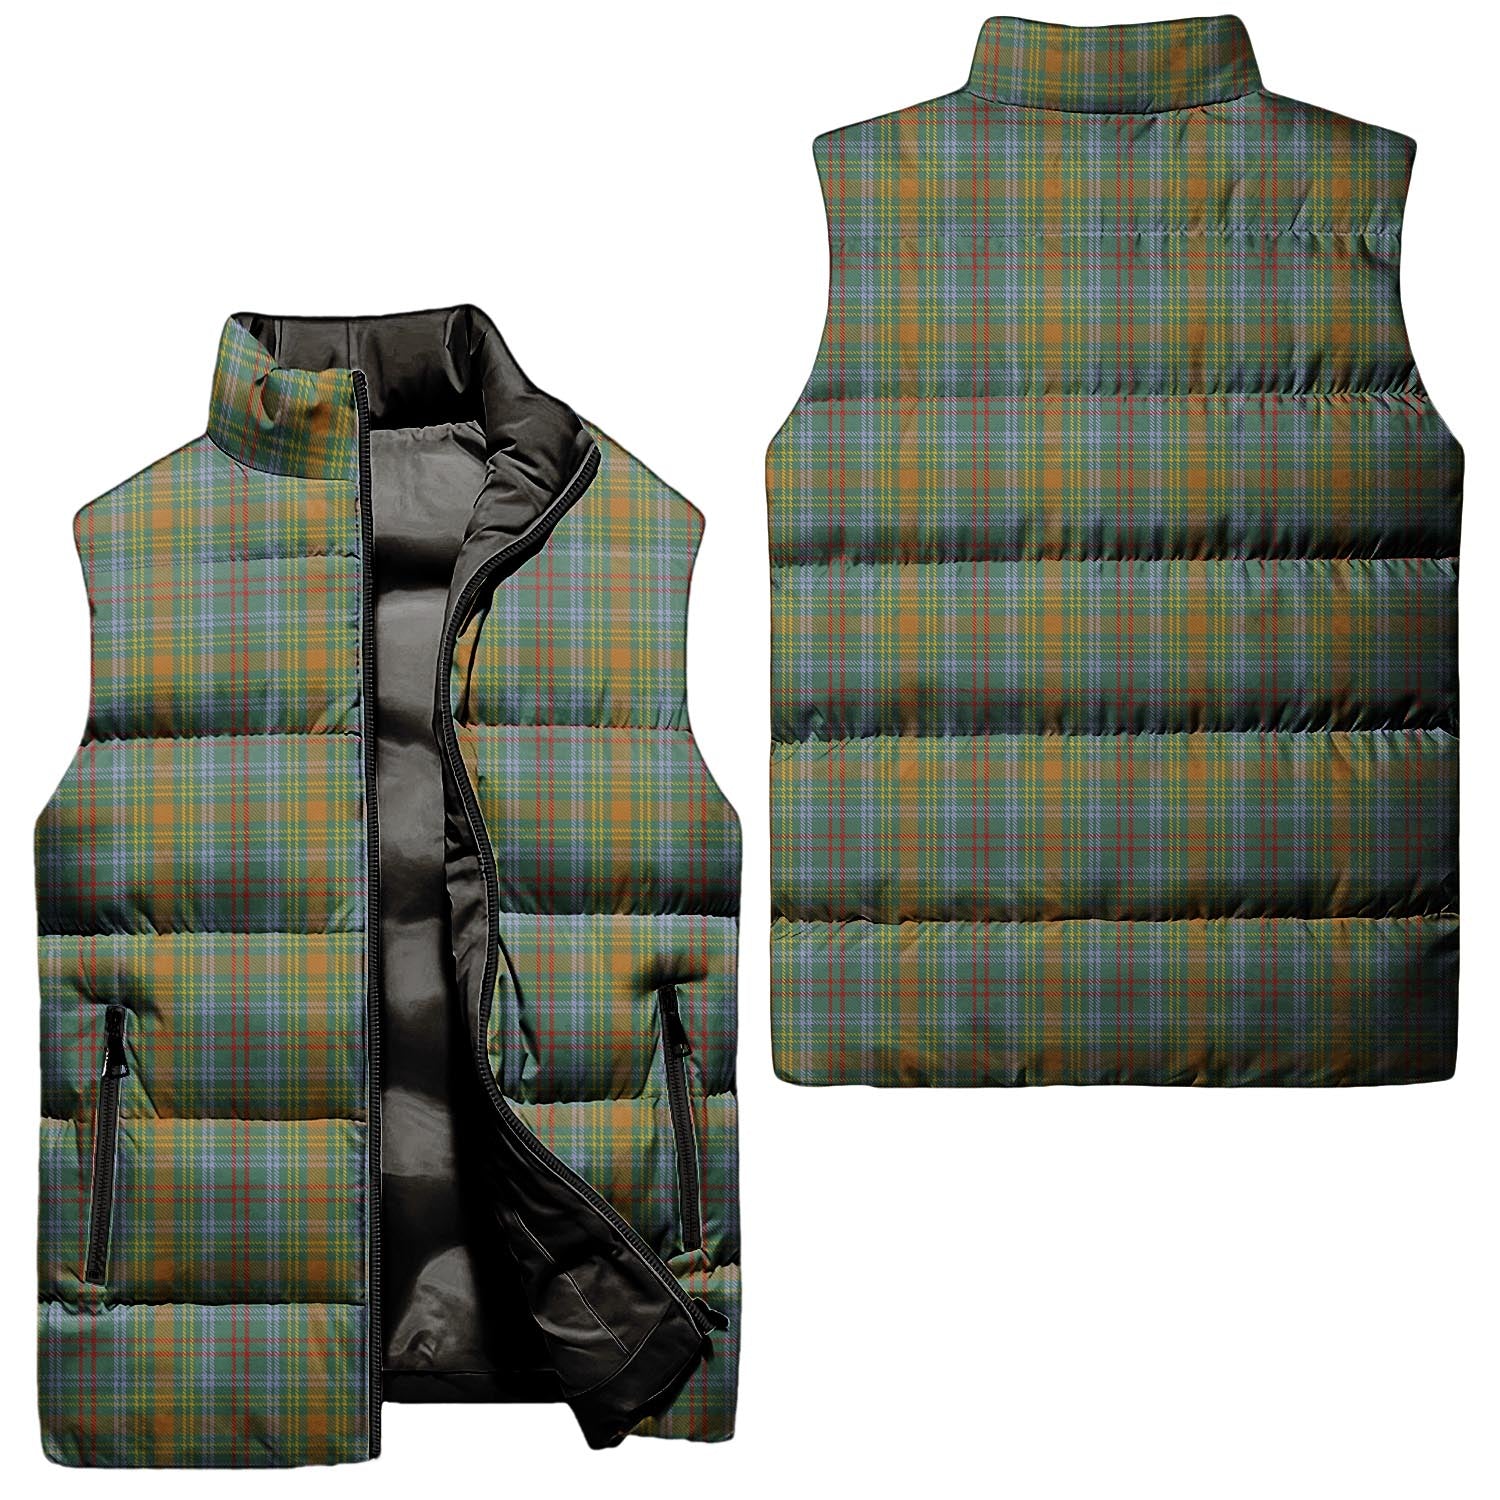 obrien-tartan-puffer-vest-tartan-plaid-sleeveless-down-jacket